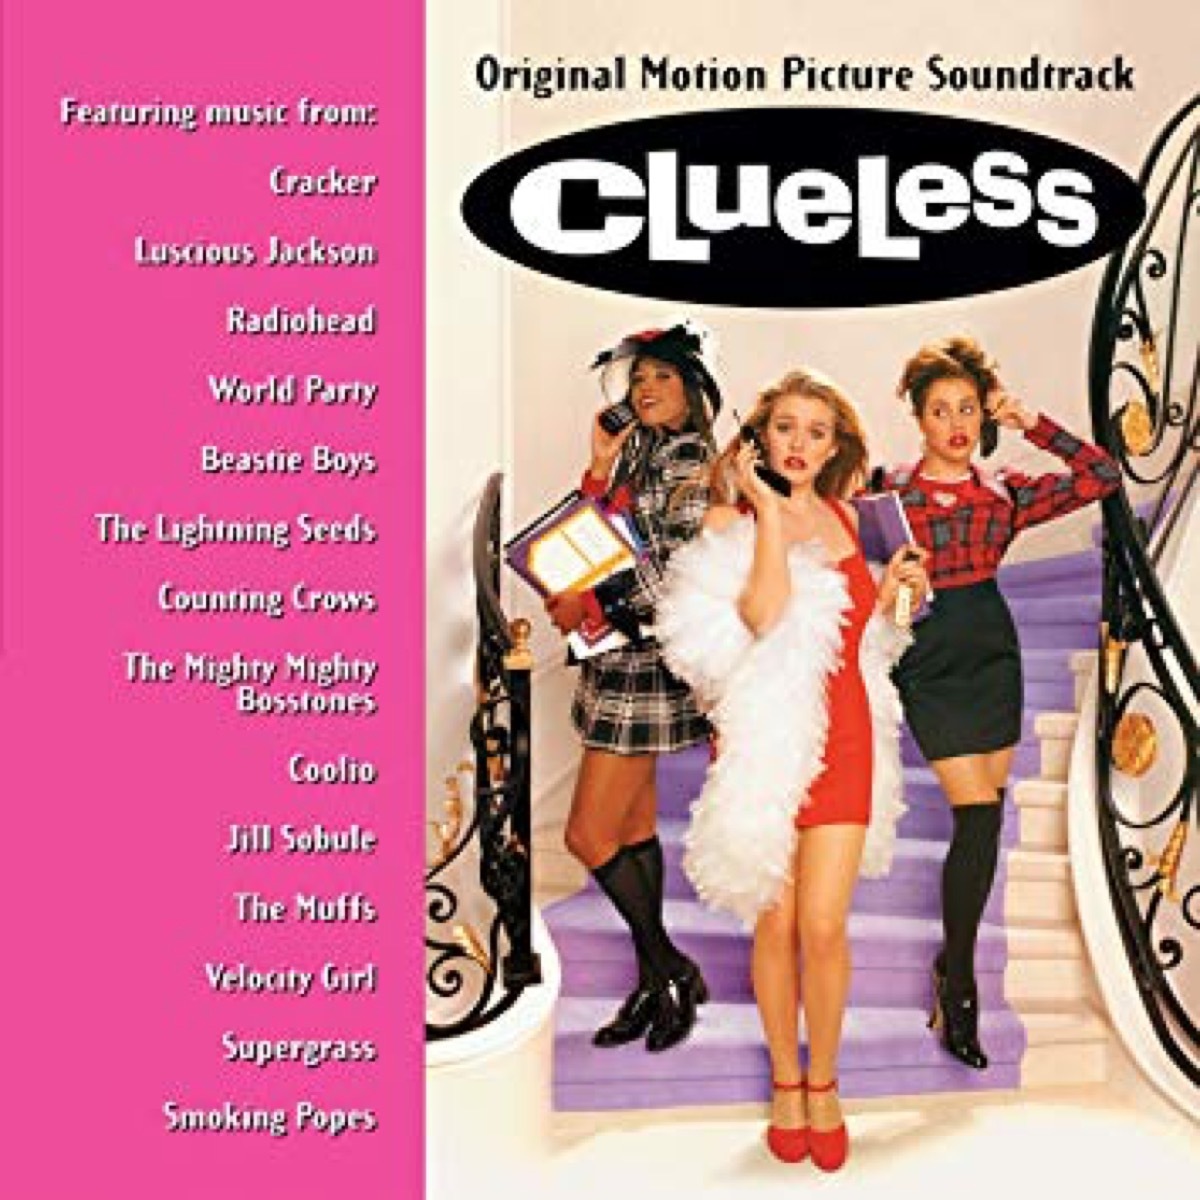 clueless movie soundtrack album cover